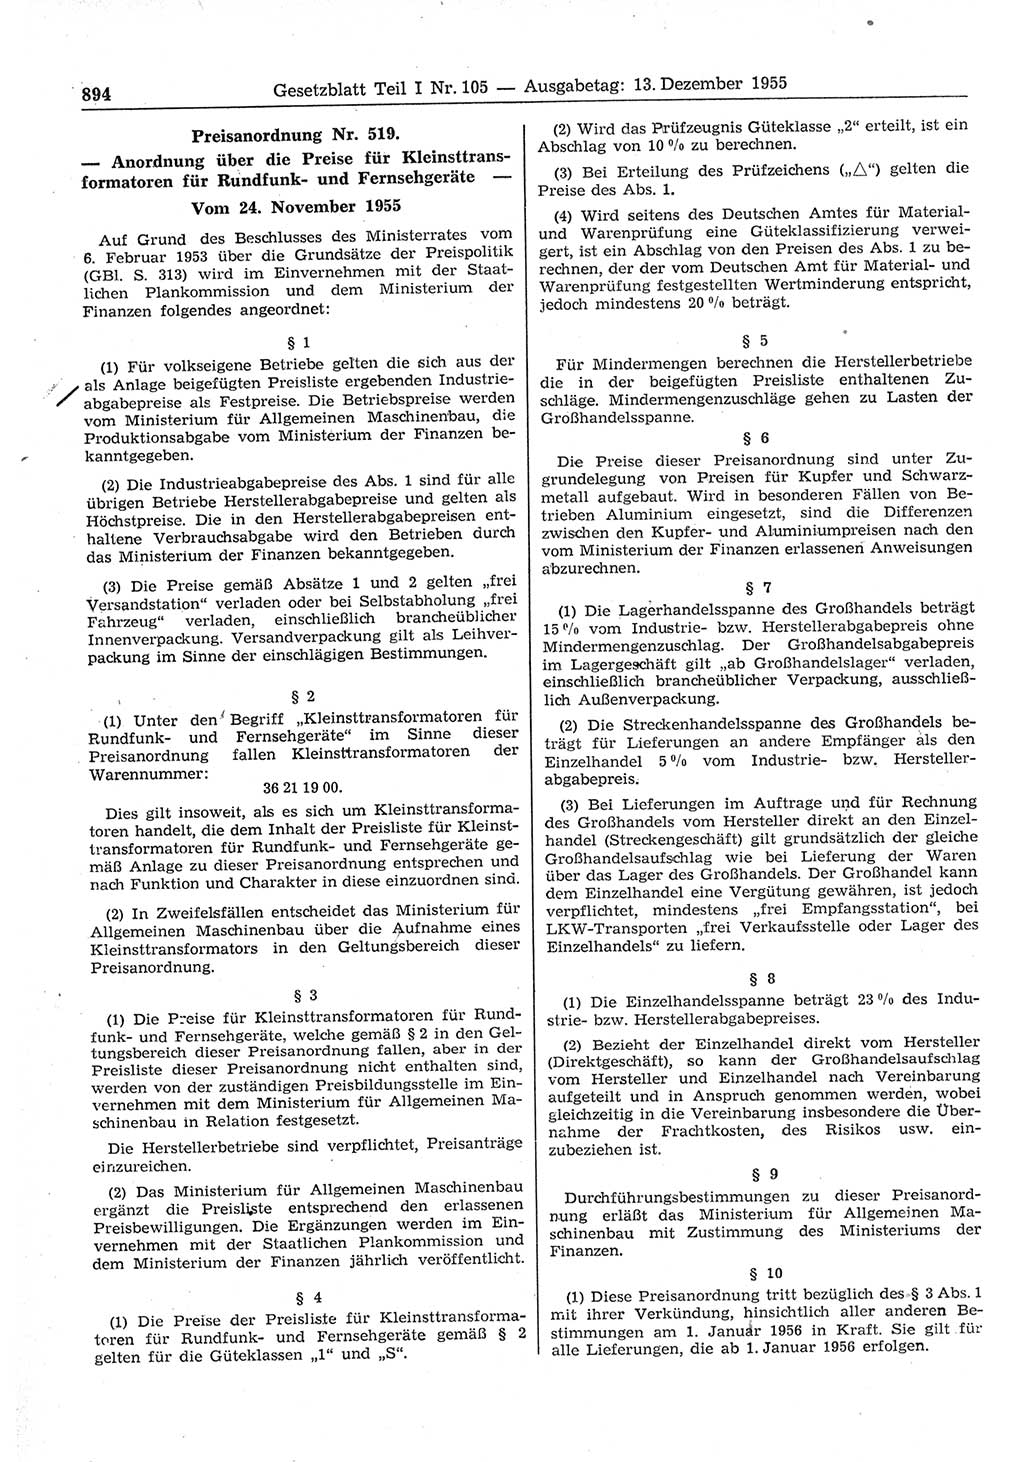 Gesetzblatt (GBl.) der Deutschen Demokratischen Republik (DDR) Teil Ⅰ 1955, Seite 894 (GBl. DDR Ⅰ 1955, S. 894)